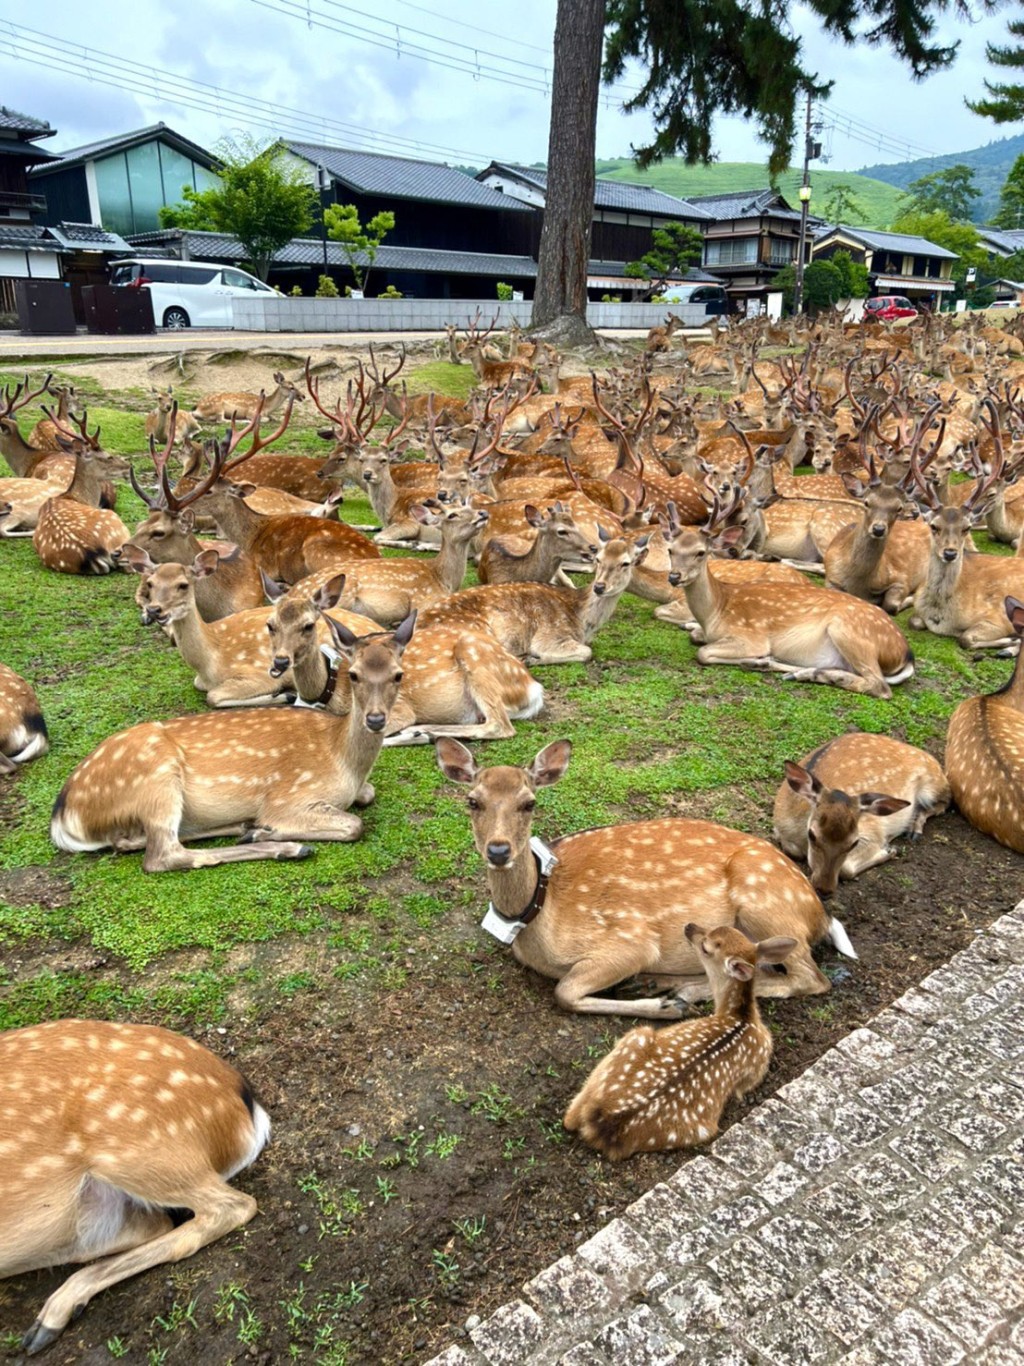 無遊客可圍，奈良公園鹿仔瞓草地。 twitter圖